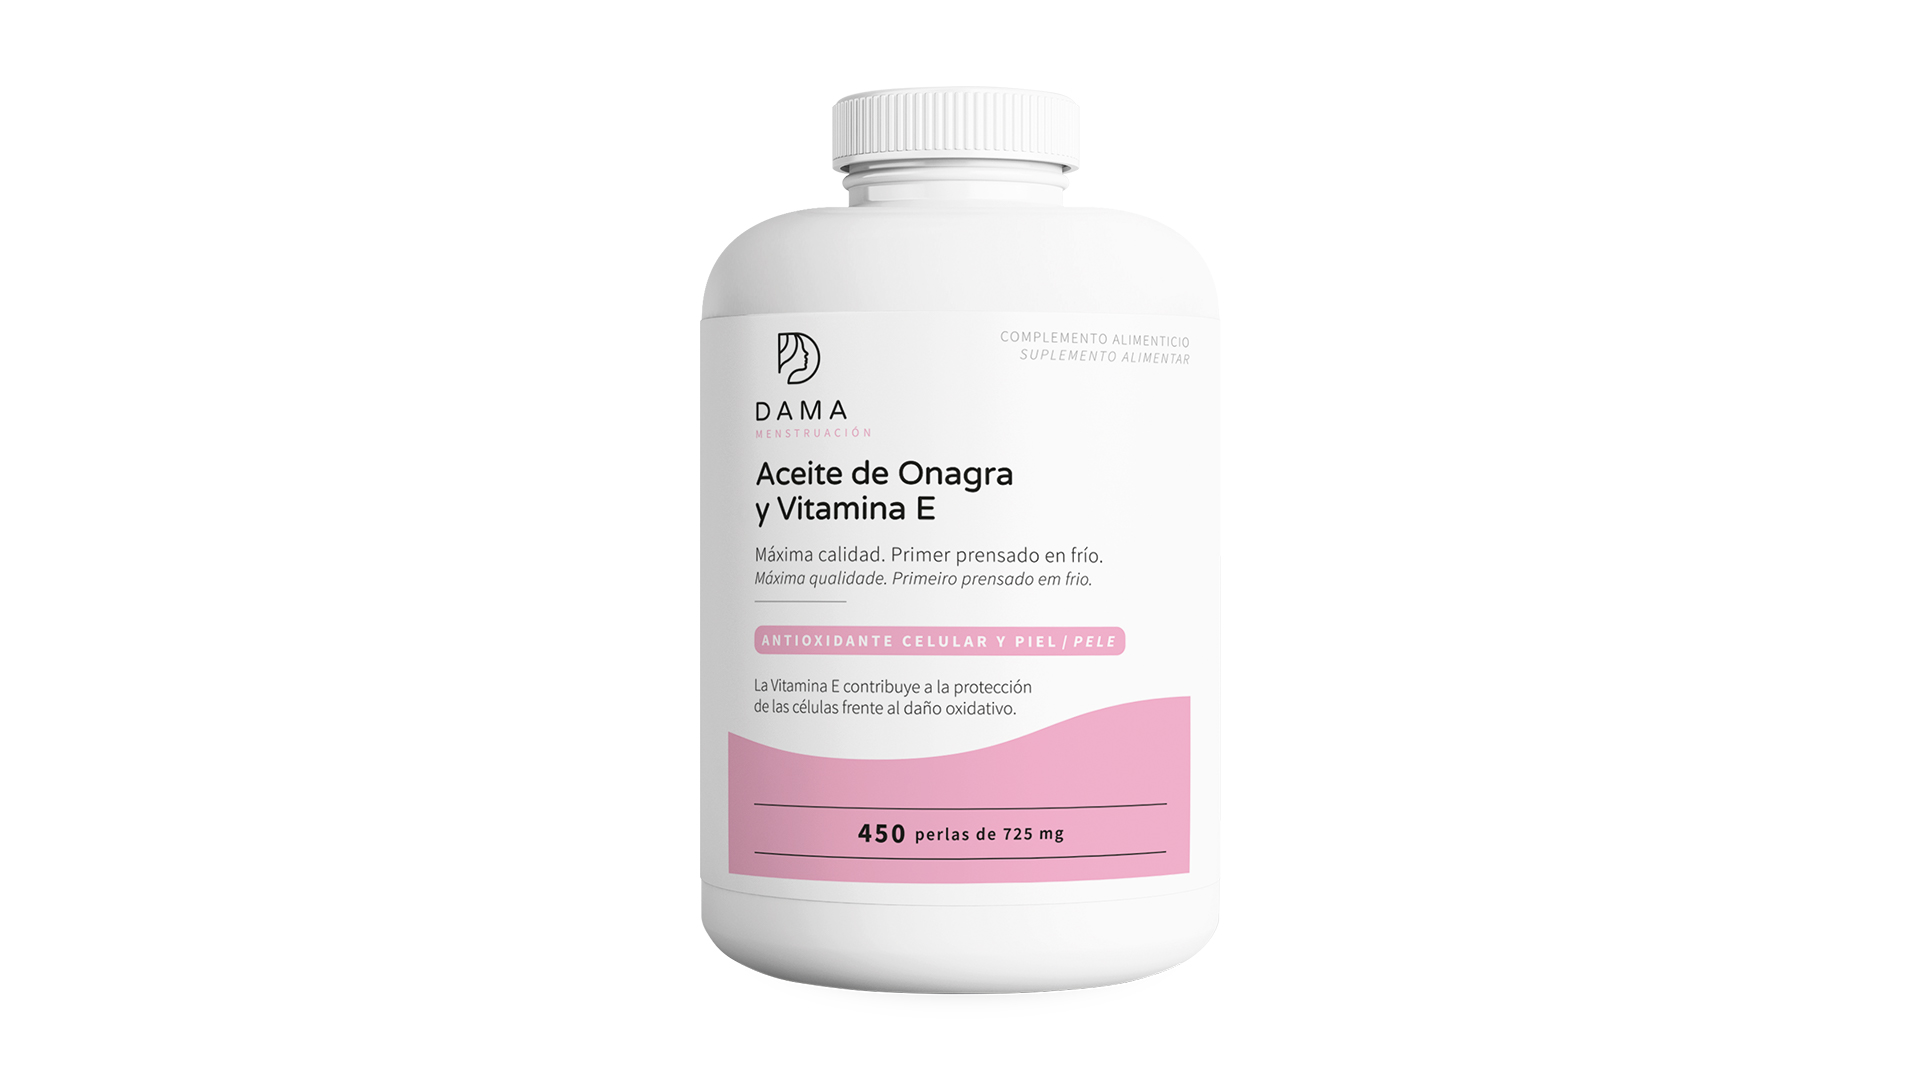 Aceite de onagra y vitamina E (450 perlas)